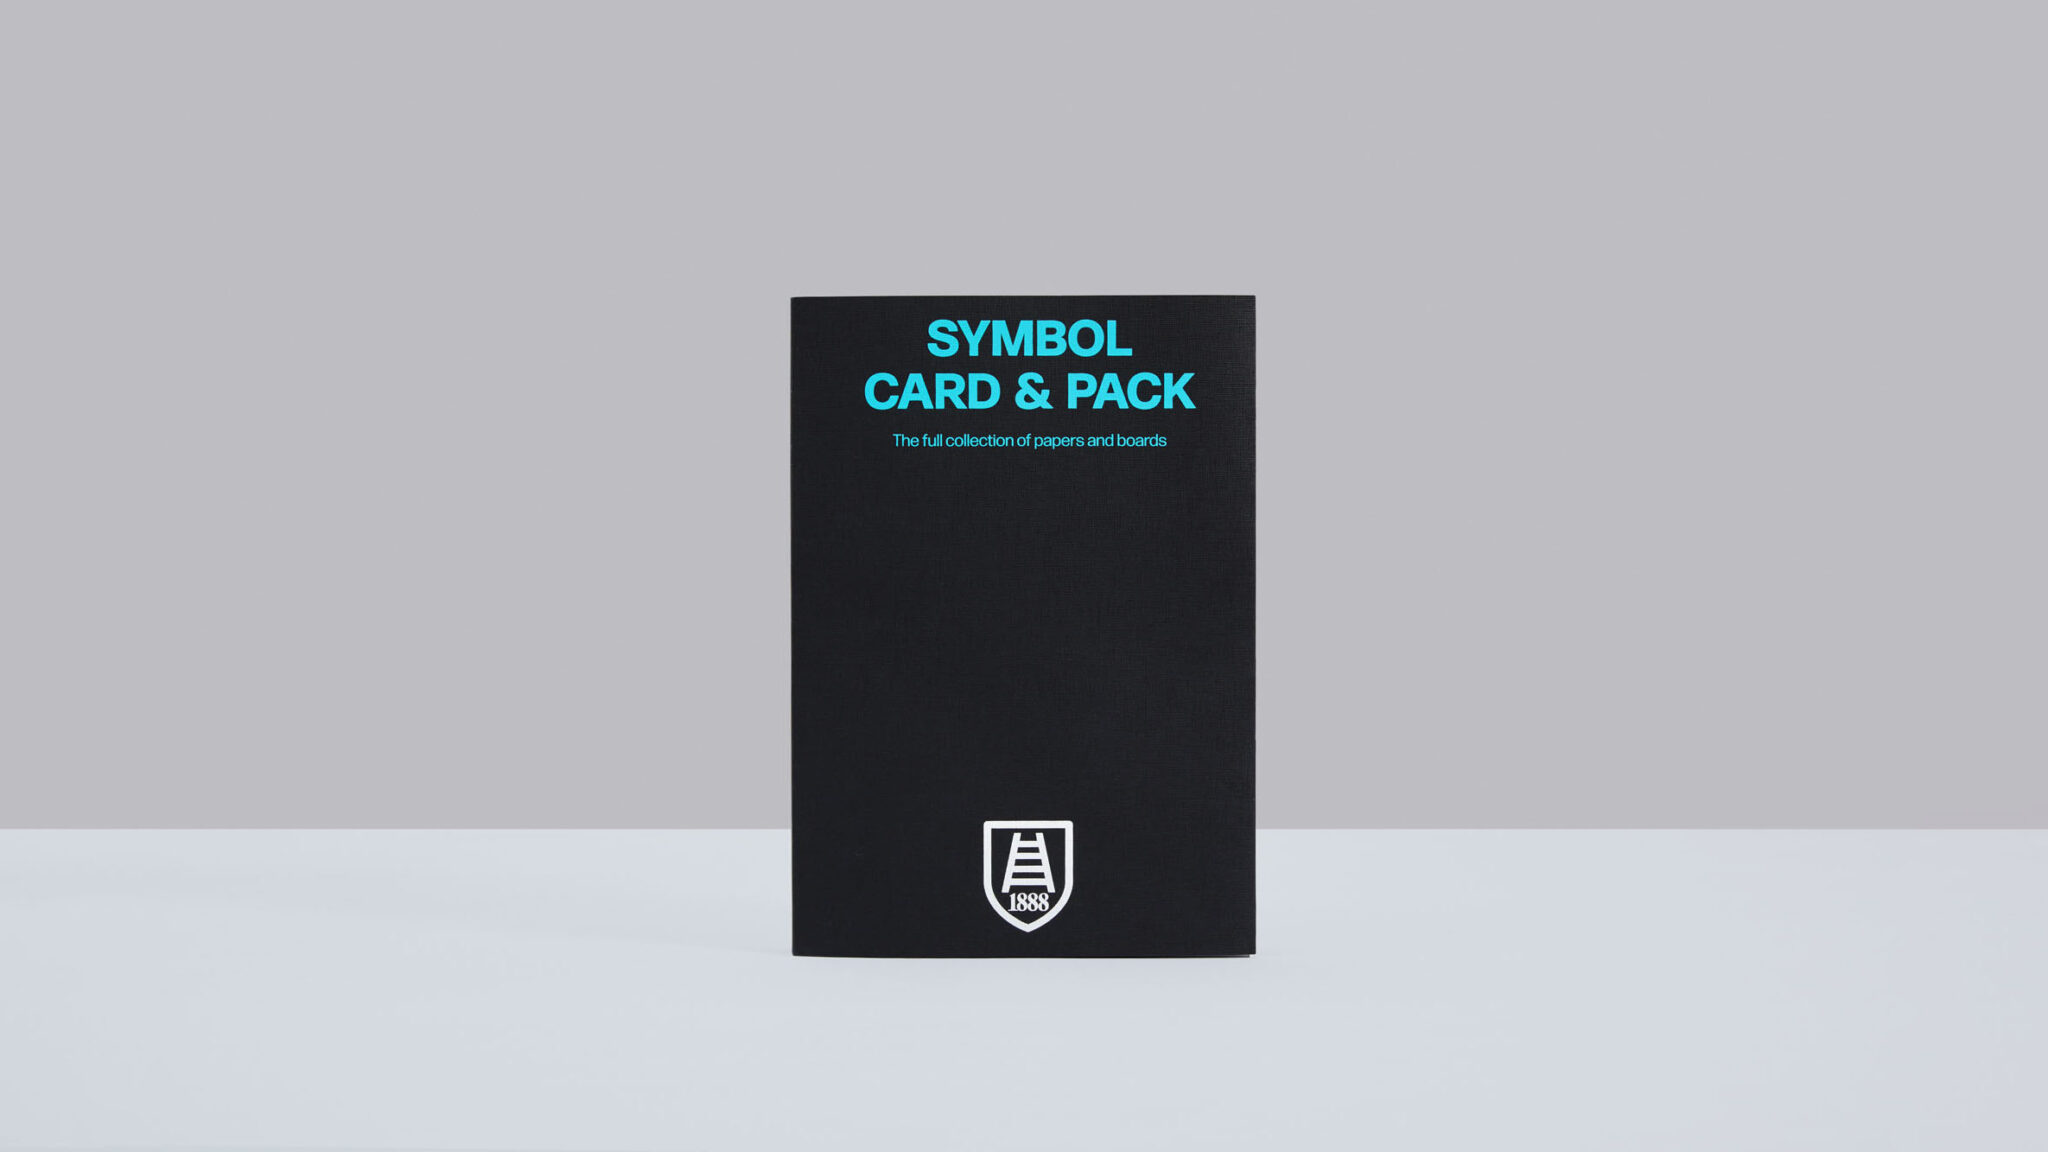 Toda a gama Symbol Card&Pack disponível no novo mostruário